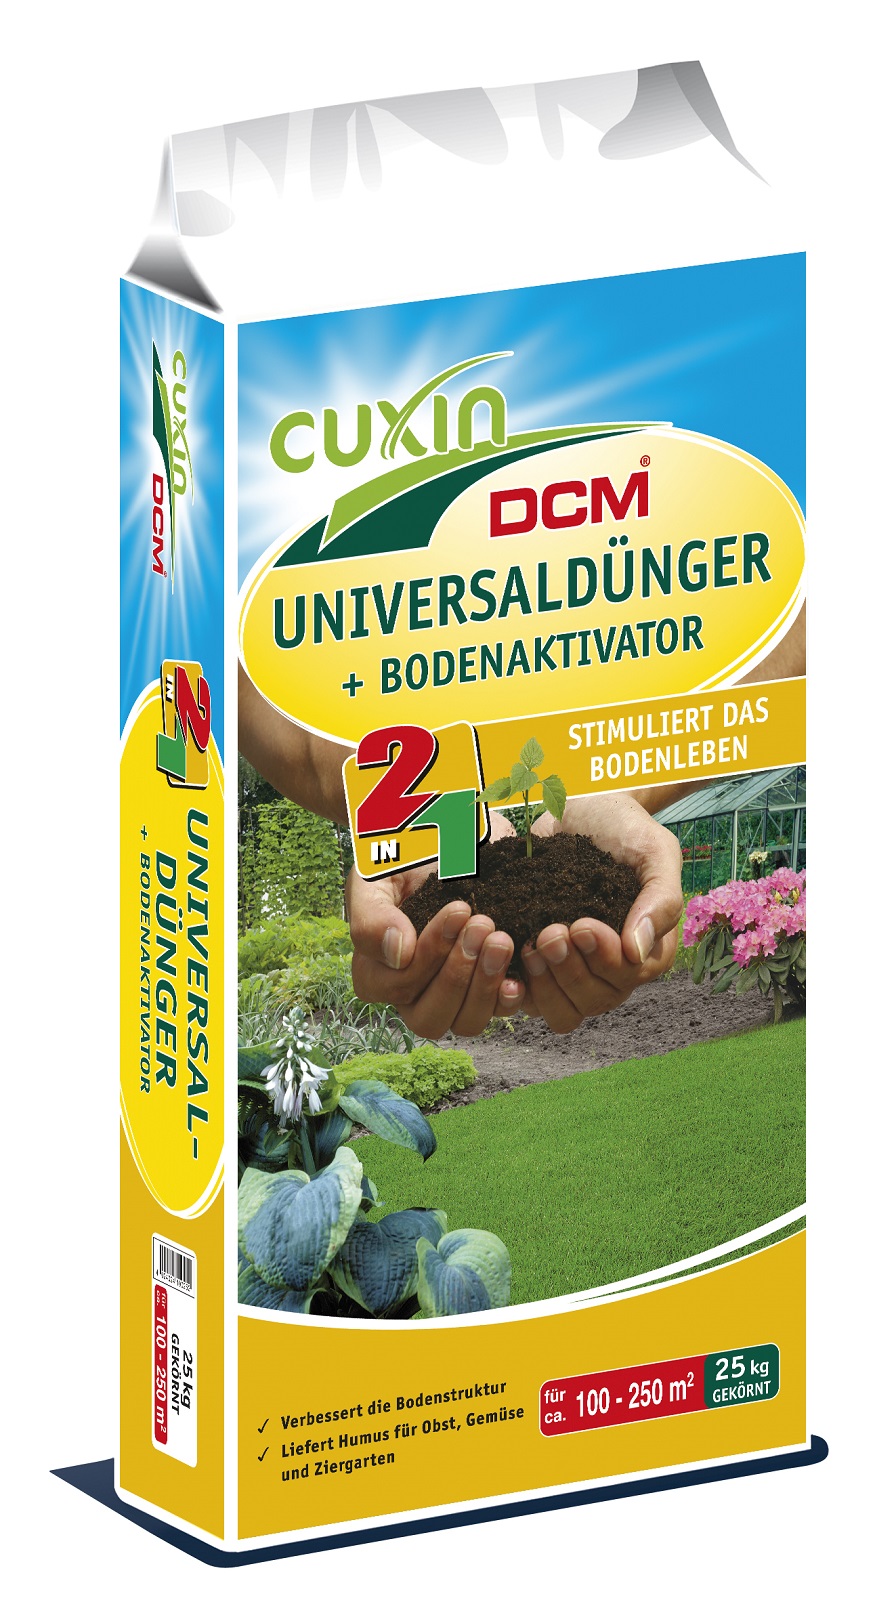 Cuxin DCM Universaldünger + Bodenaktivator 25 kg